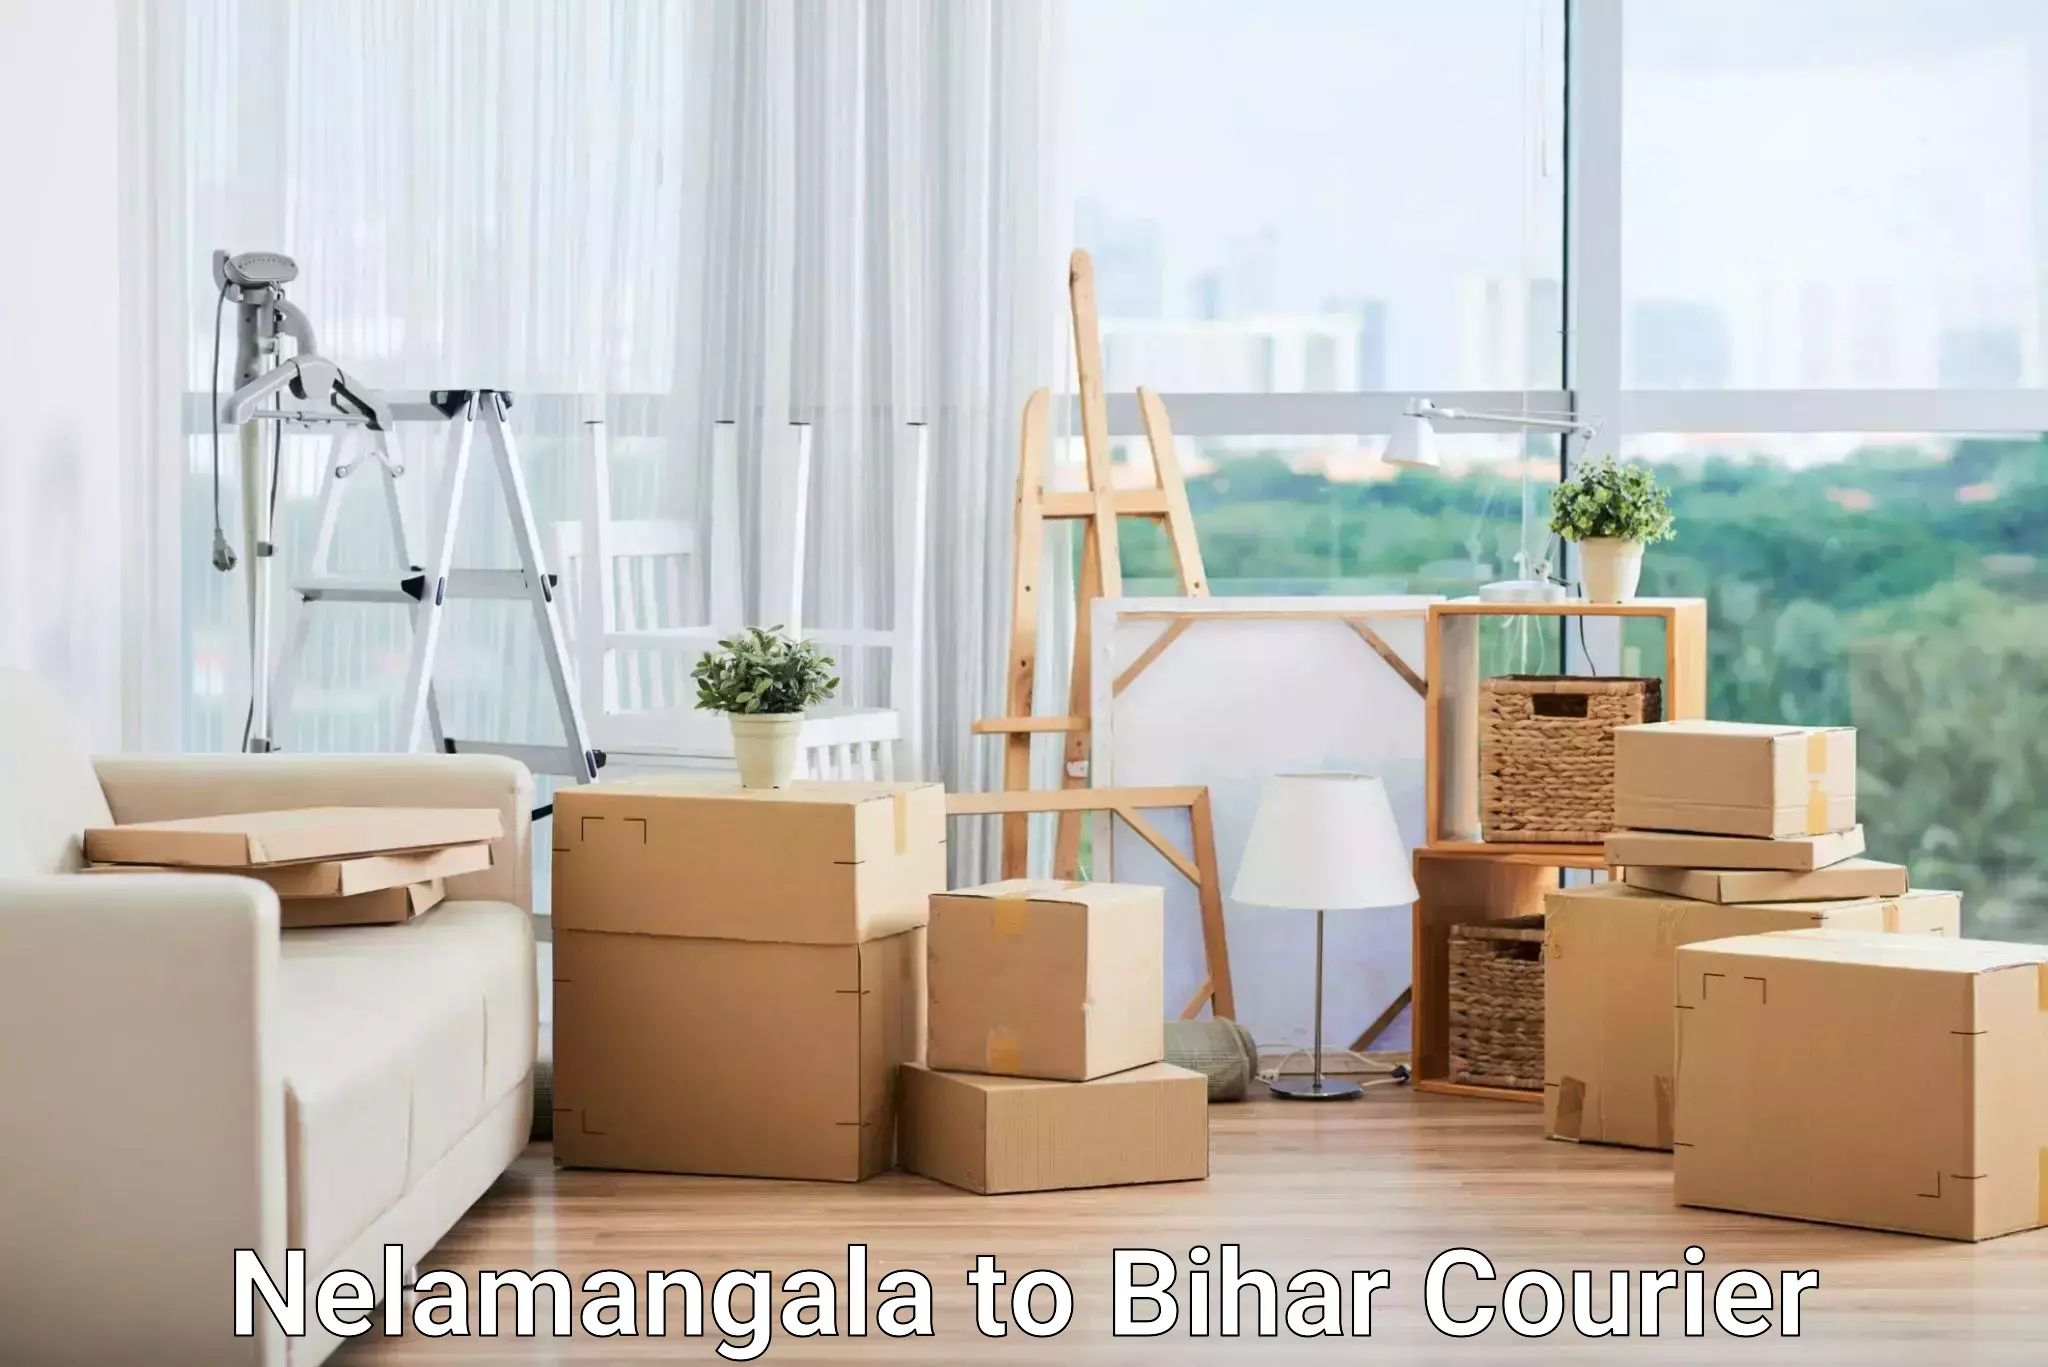 Large package courier Nelamangala to Aurangabad Bihar